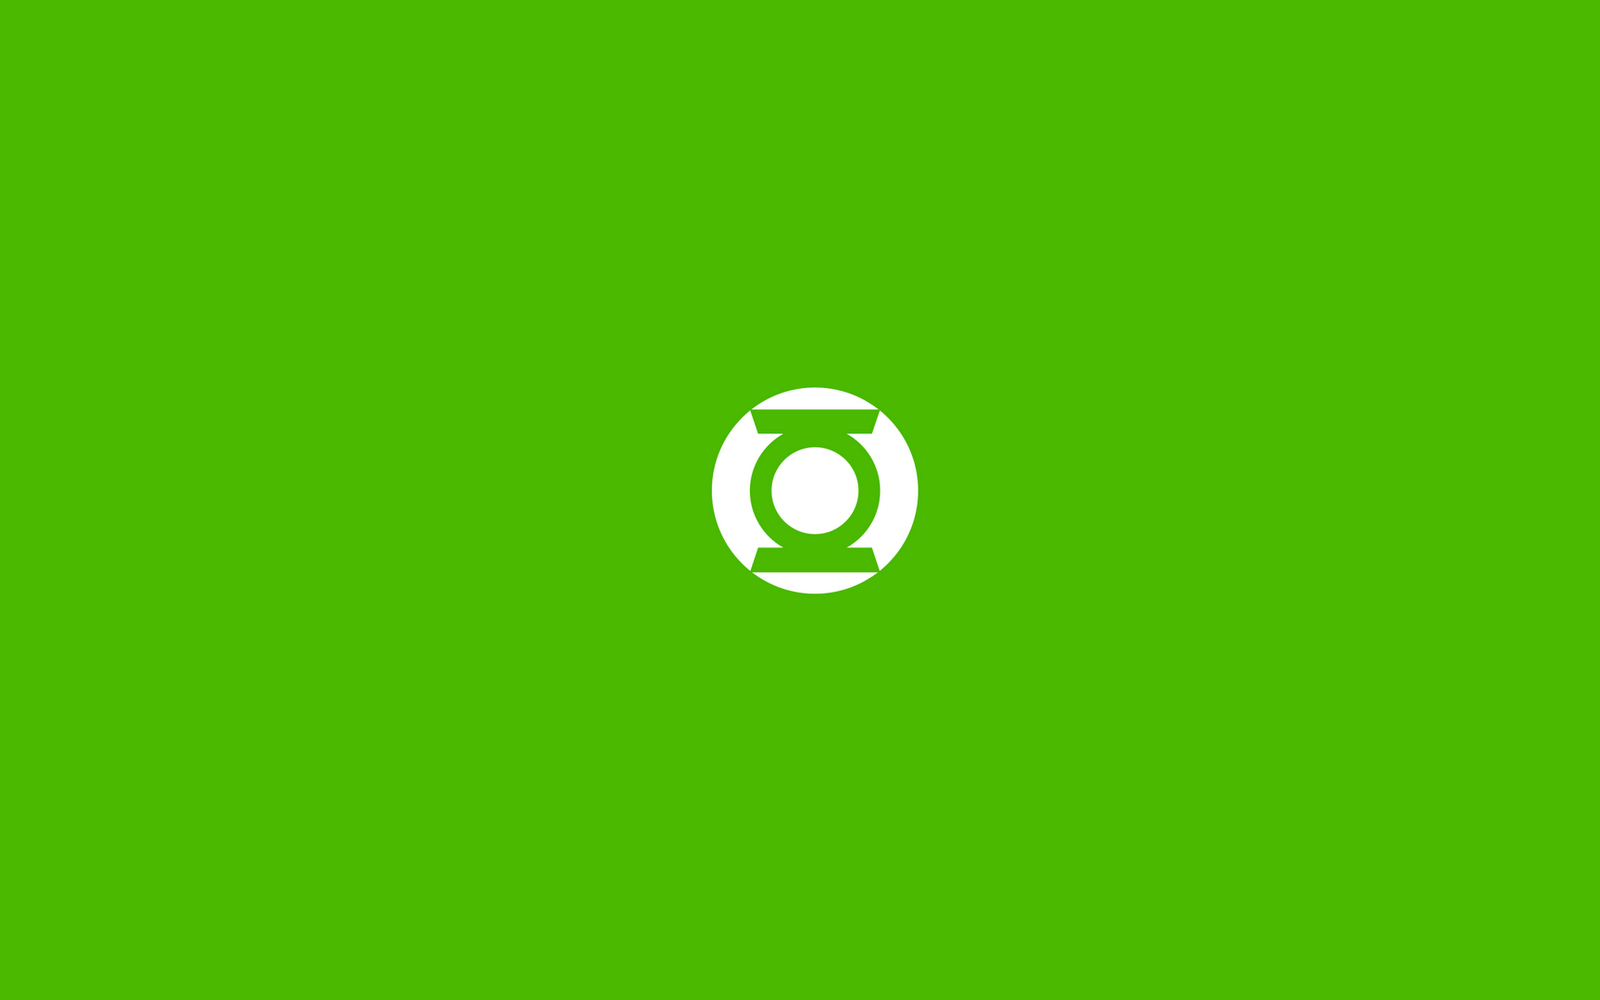 Green Lantern Logo Wallpaper Hd